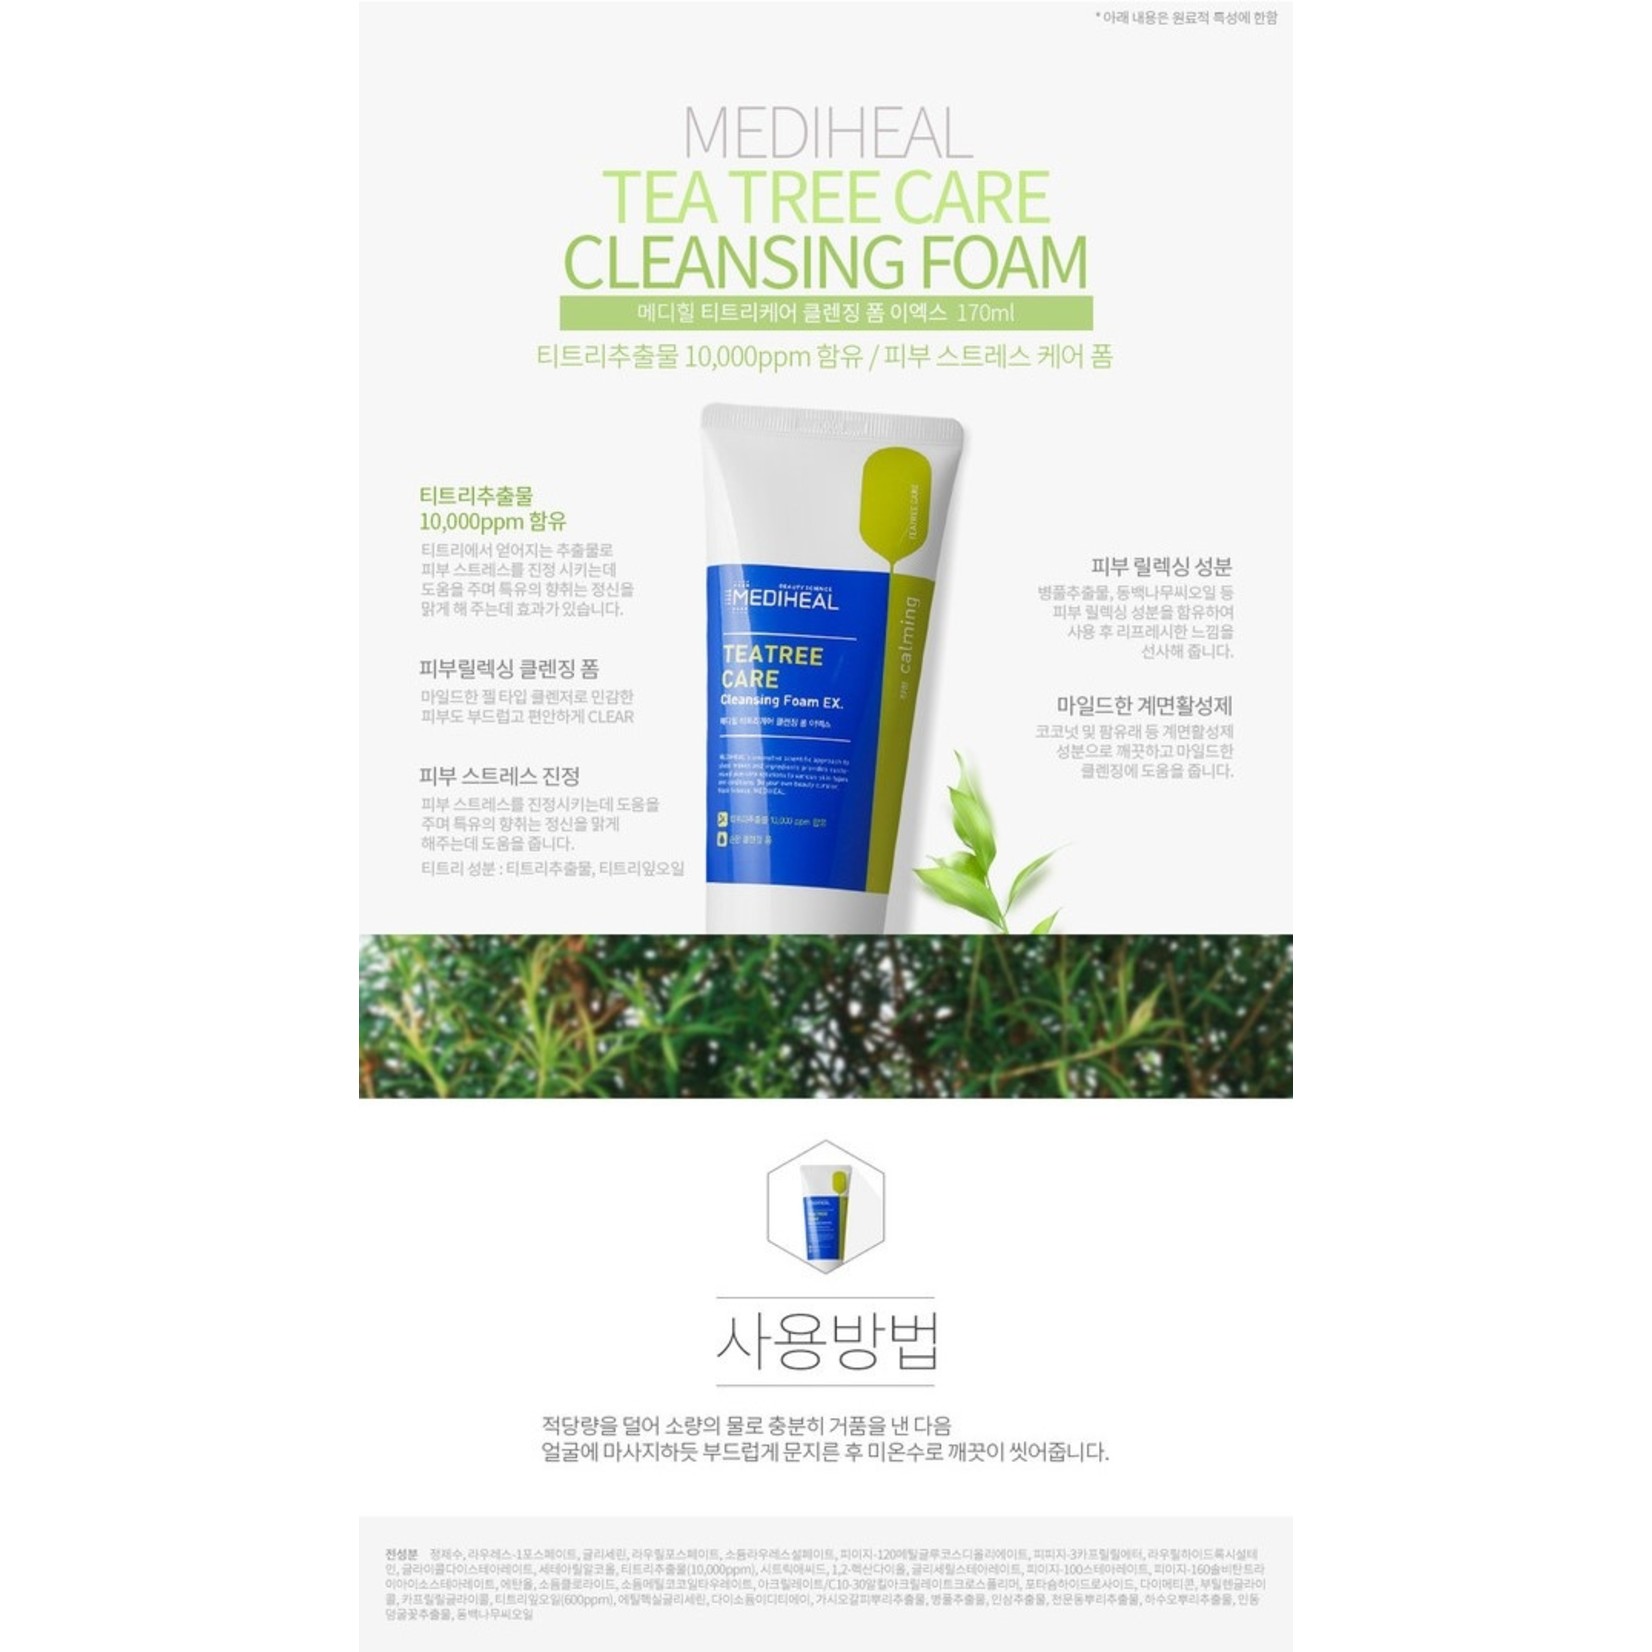 mediheal-tea-tree-care-cleansing-foam-ex.jpg